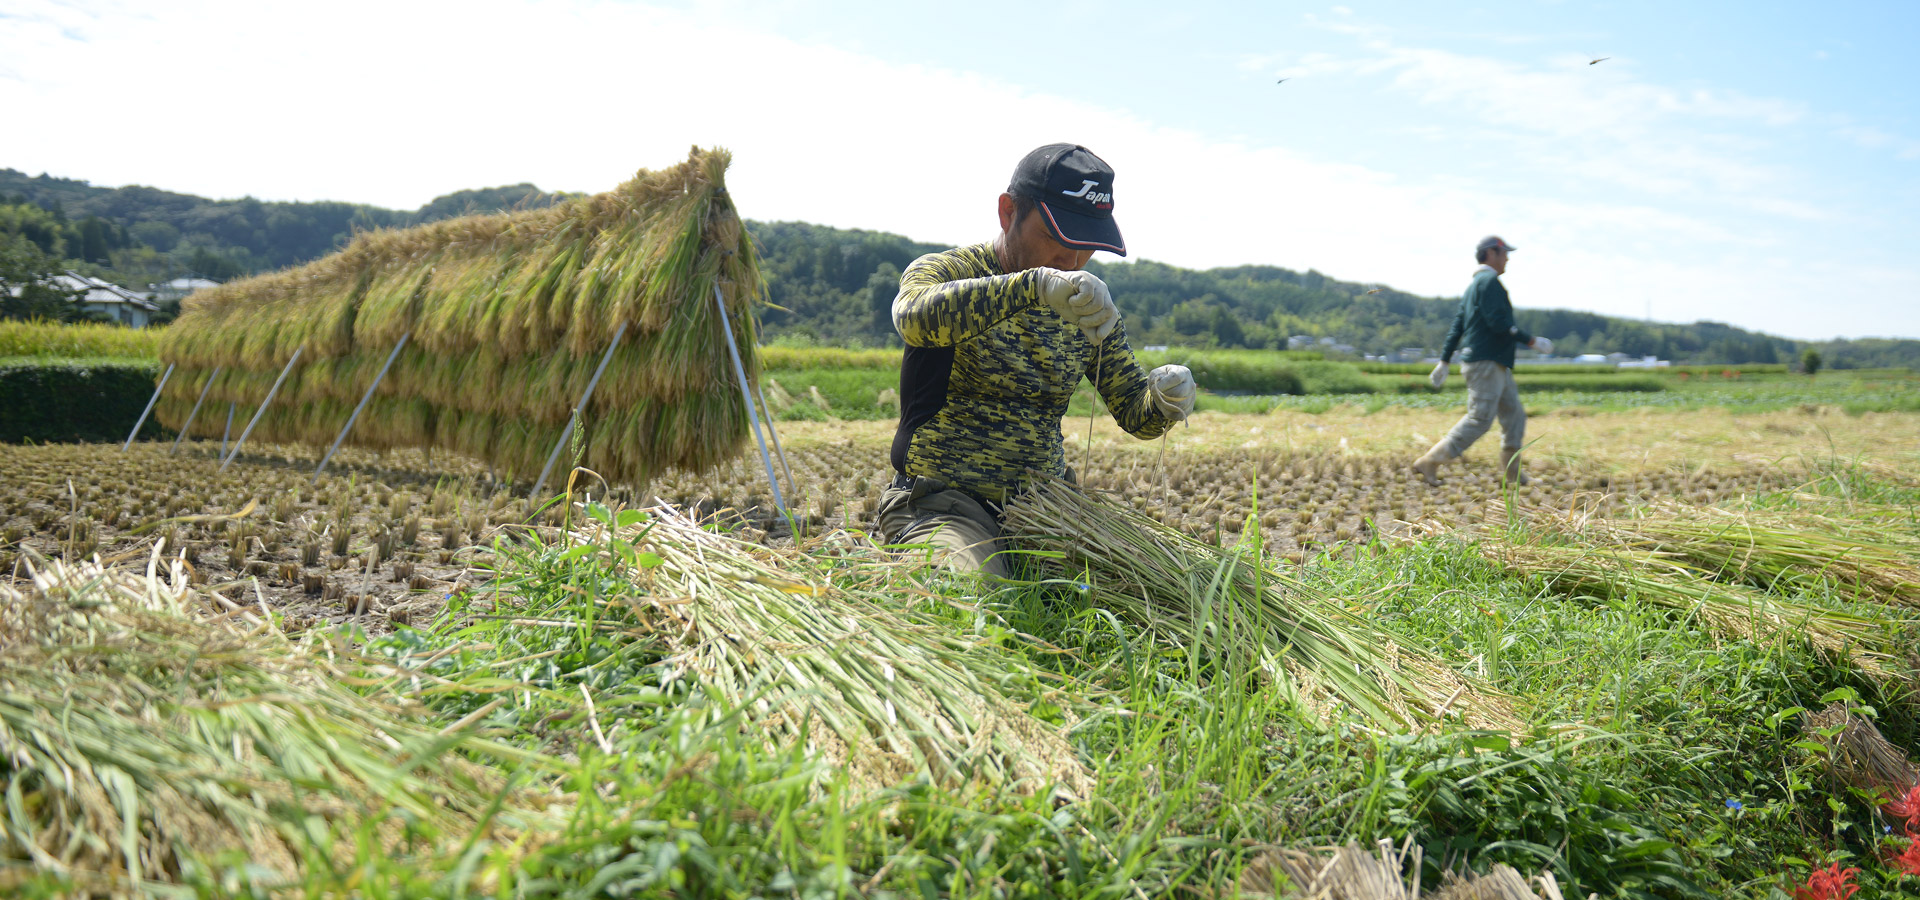 毛利秀幸さんが作る、無農薬・無施肥栽培米。